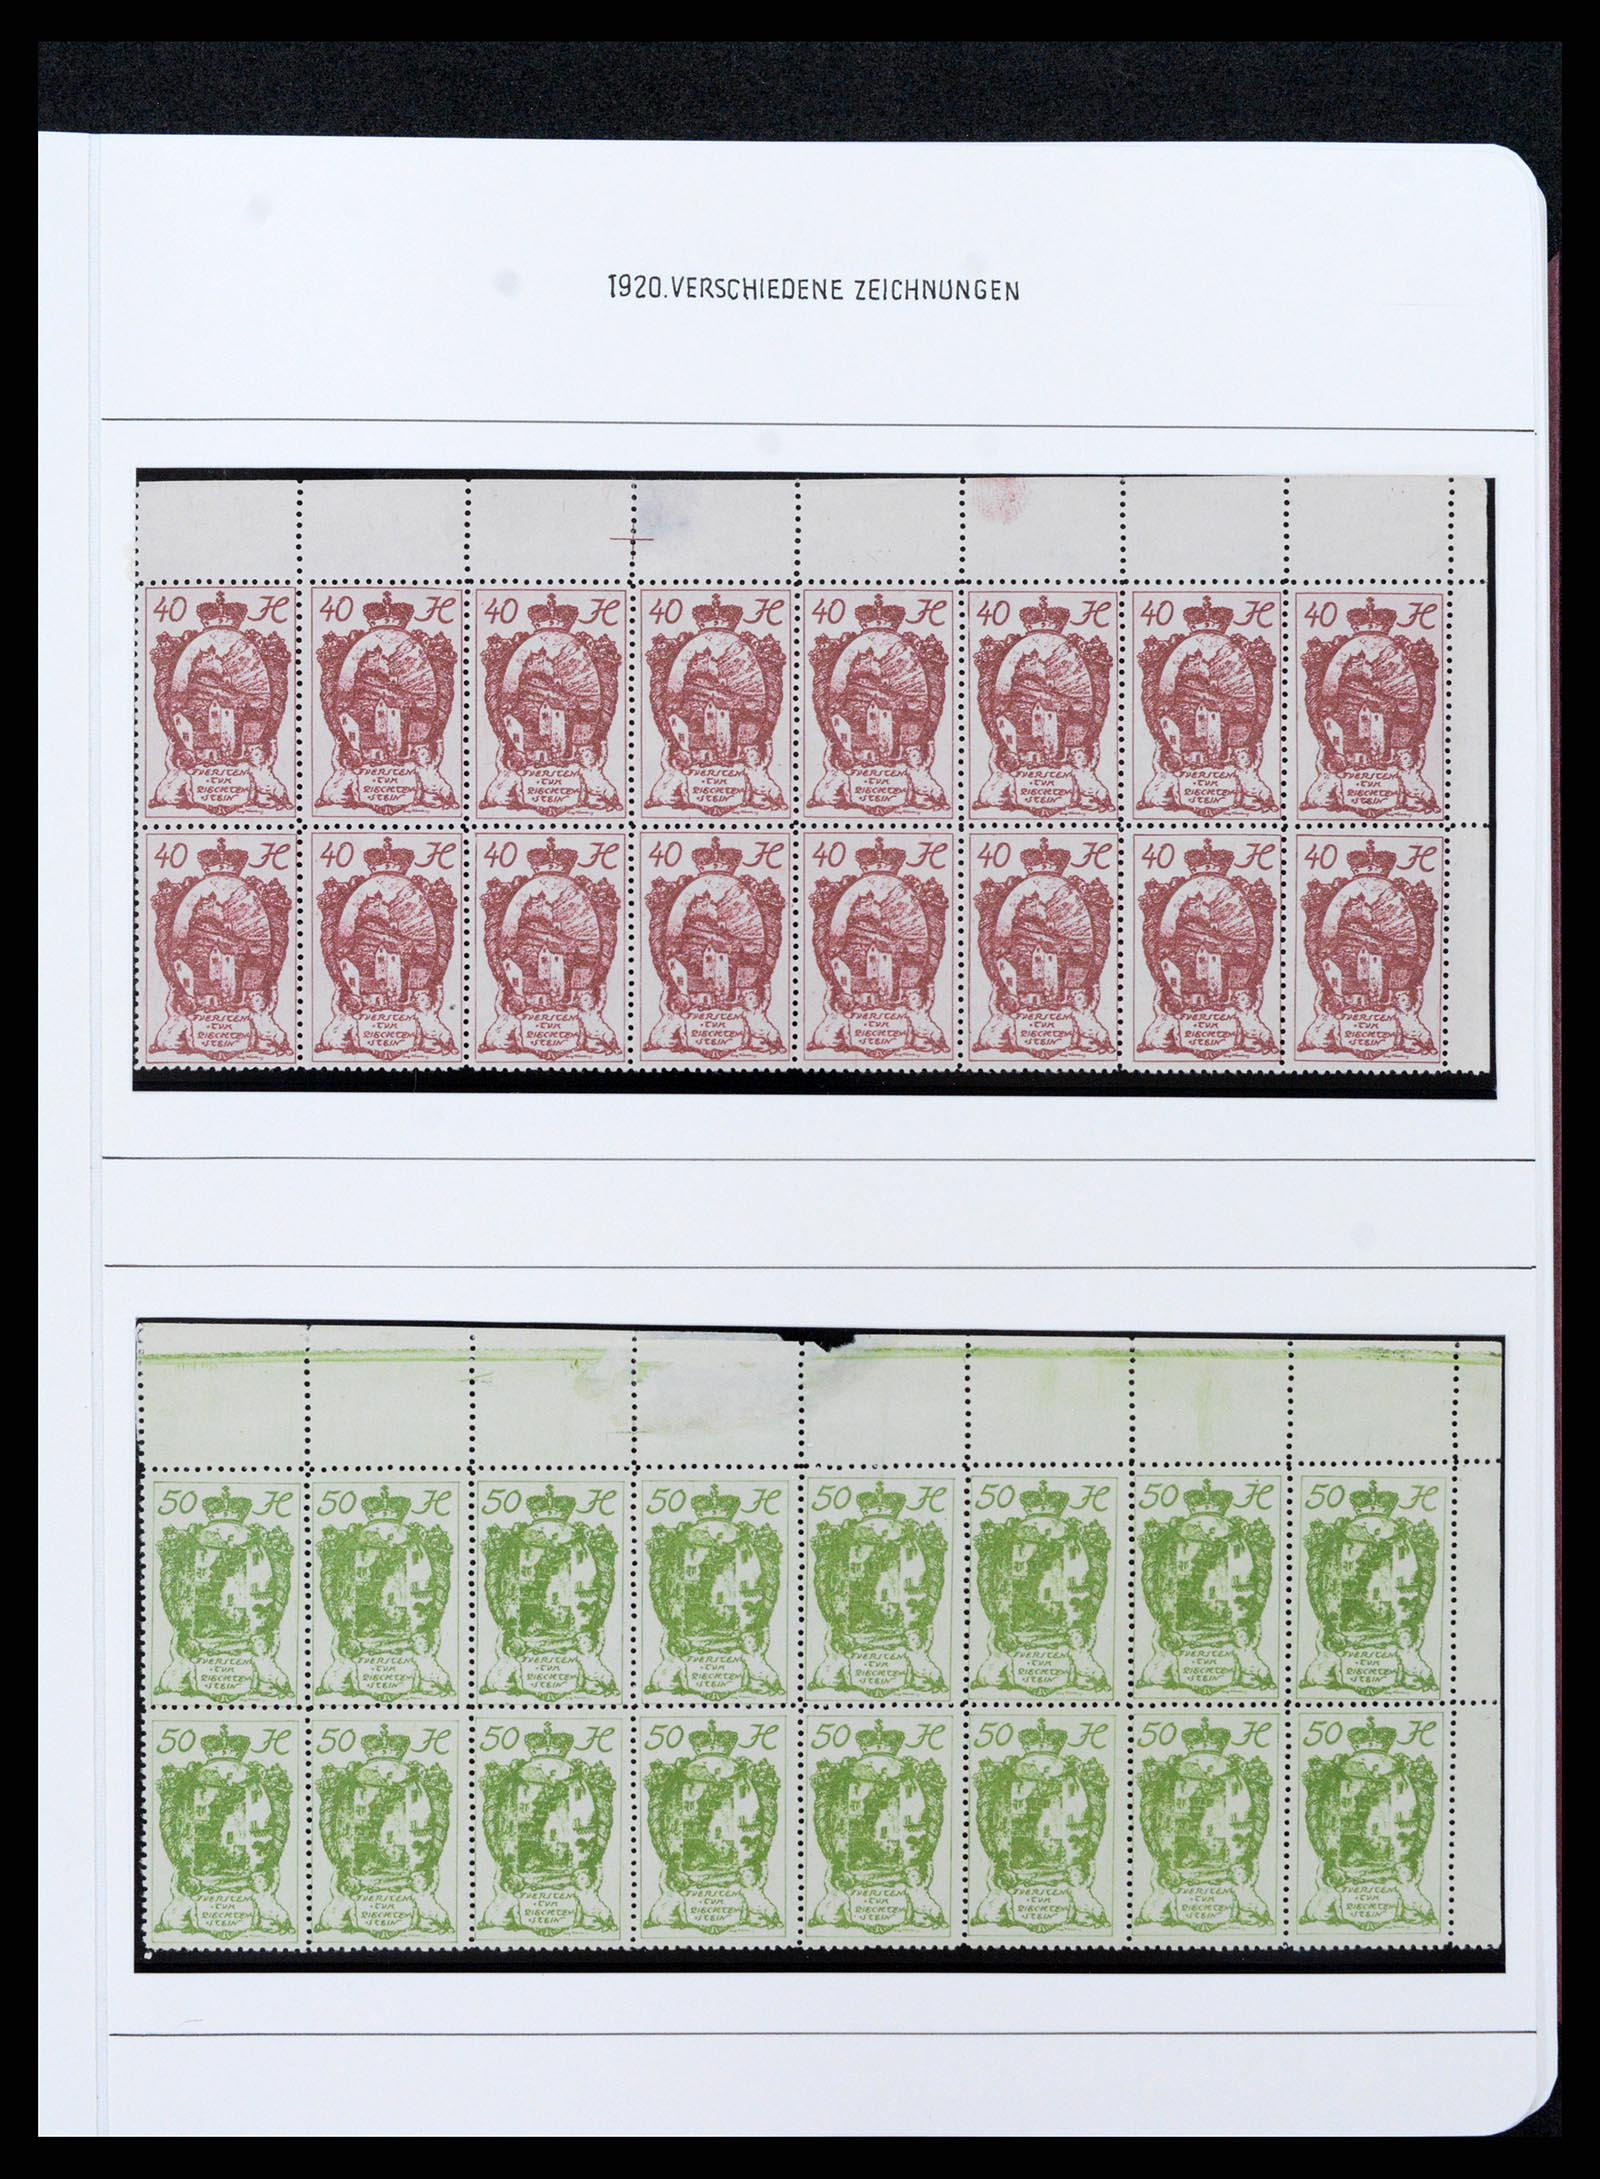 37150 0089 - Stamp collection 37150 Liechtenstein supercollection 1912-1962.